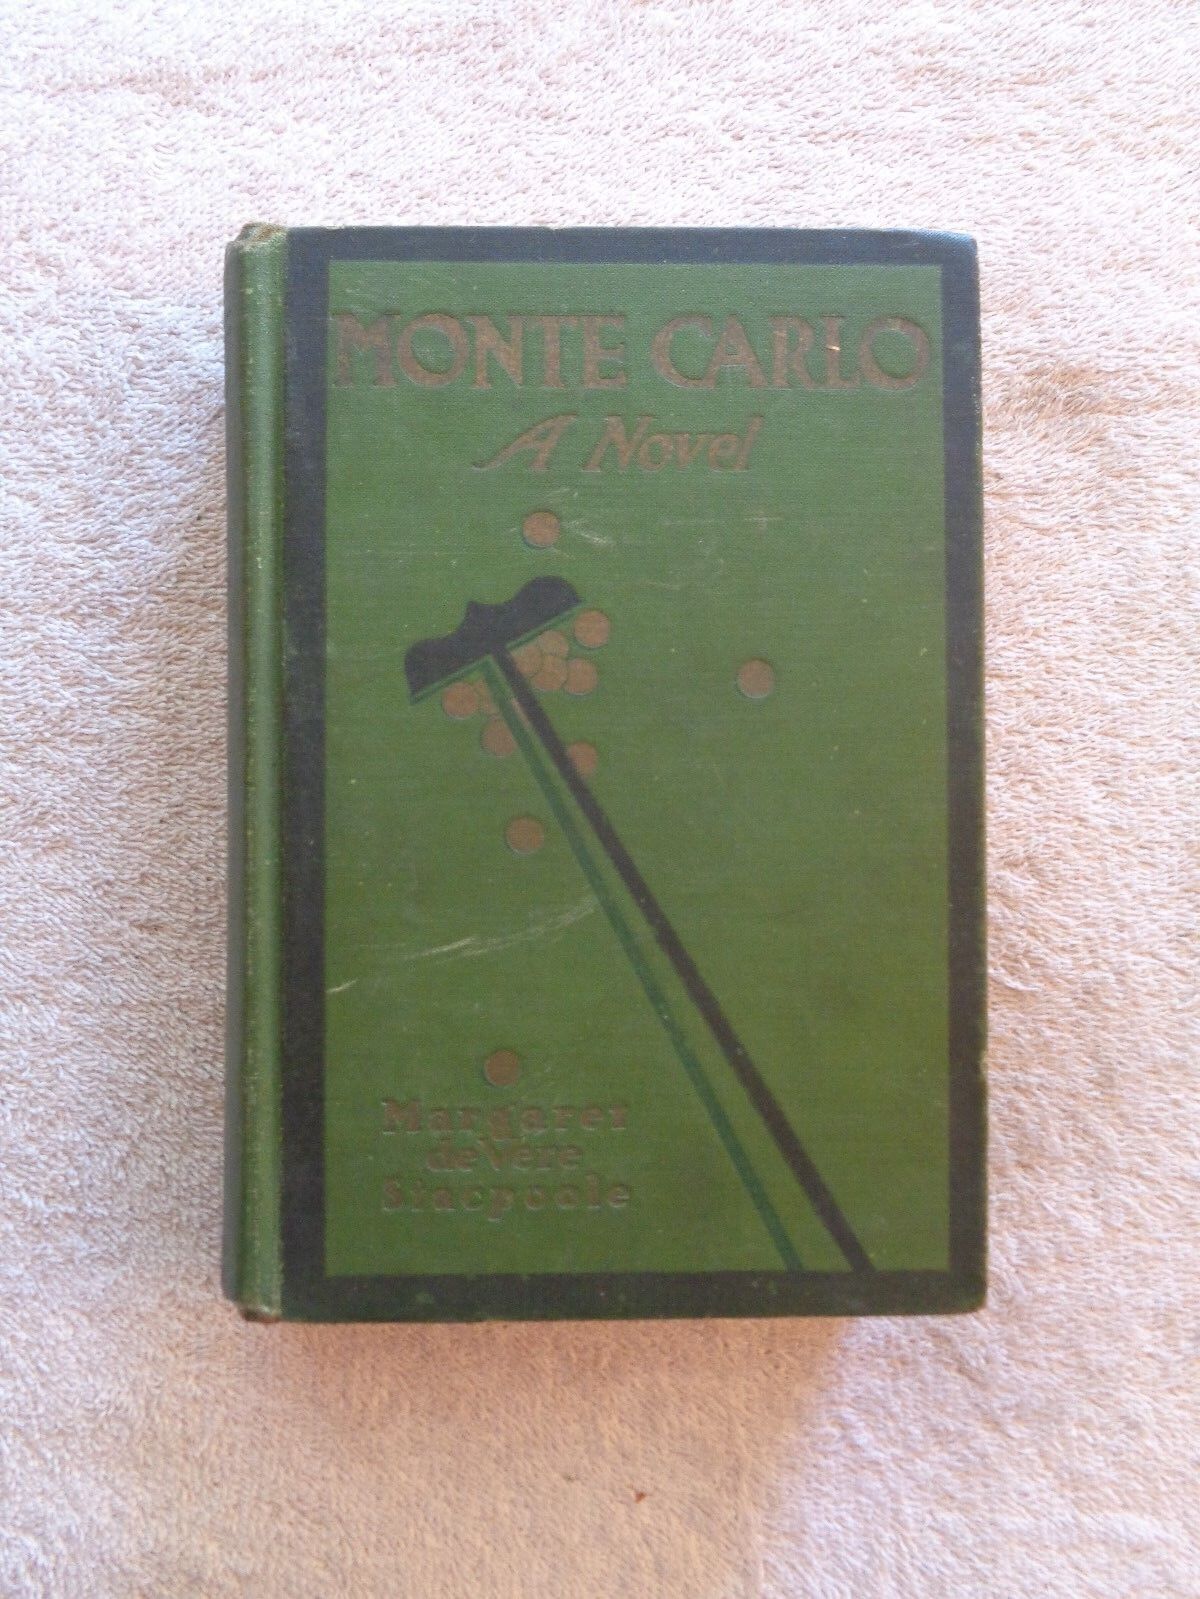 1913 MONTE CARLO A Novel Margaret de vere Stacpoole HC Book J1